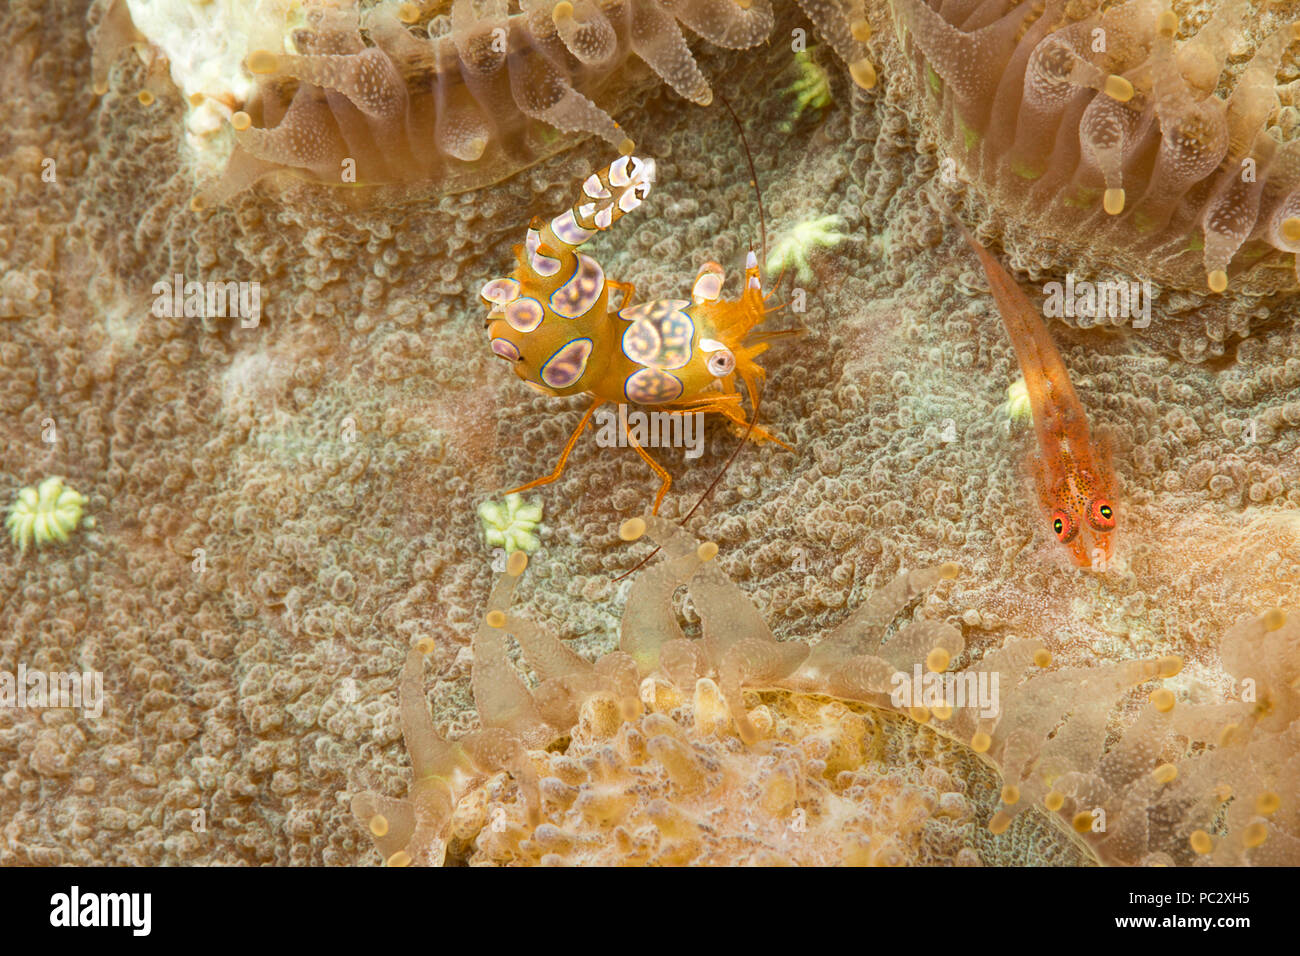 Un aperçu détaillé d'un Bryaninops corail, loki, et un squat de crevette, Thor amboinensis, entre les polypes coralliens, aux Philippines. Banque D'Images